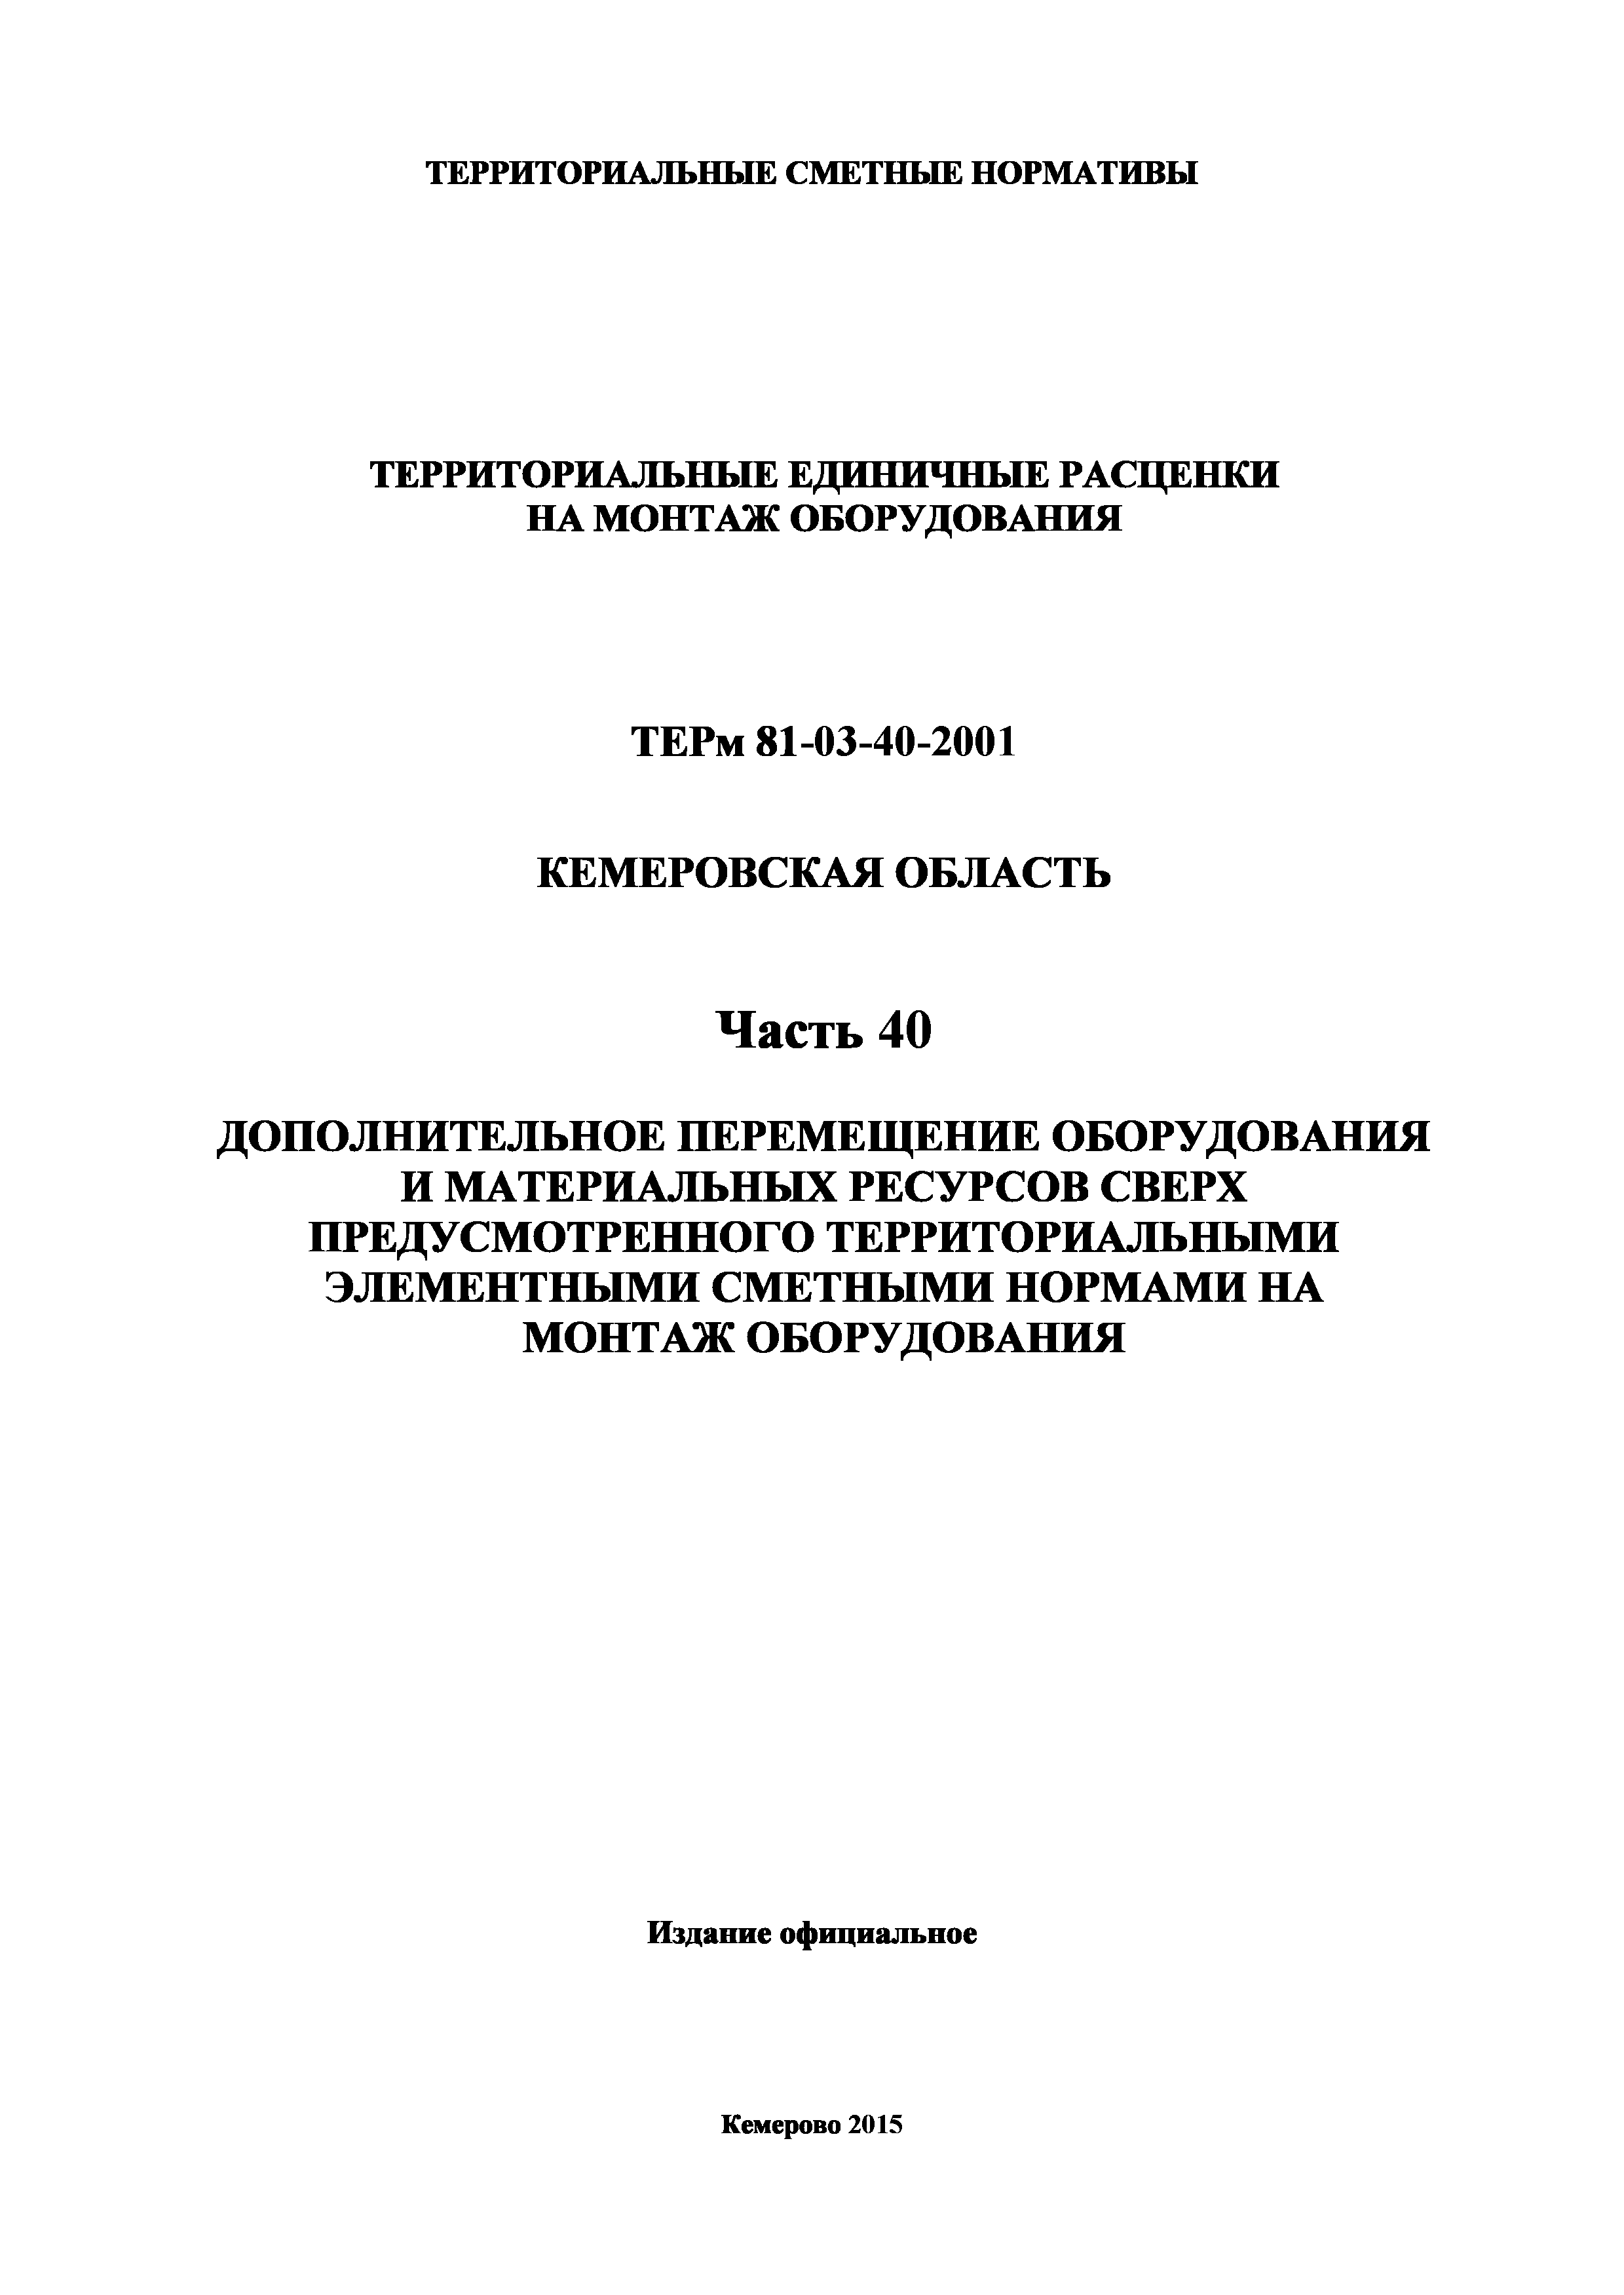 ТЕРм Кемеровская область 81-03-40-2001